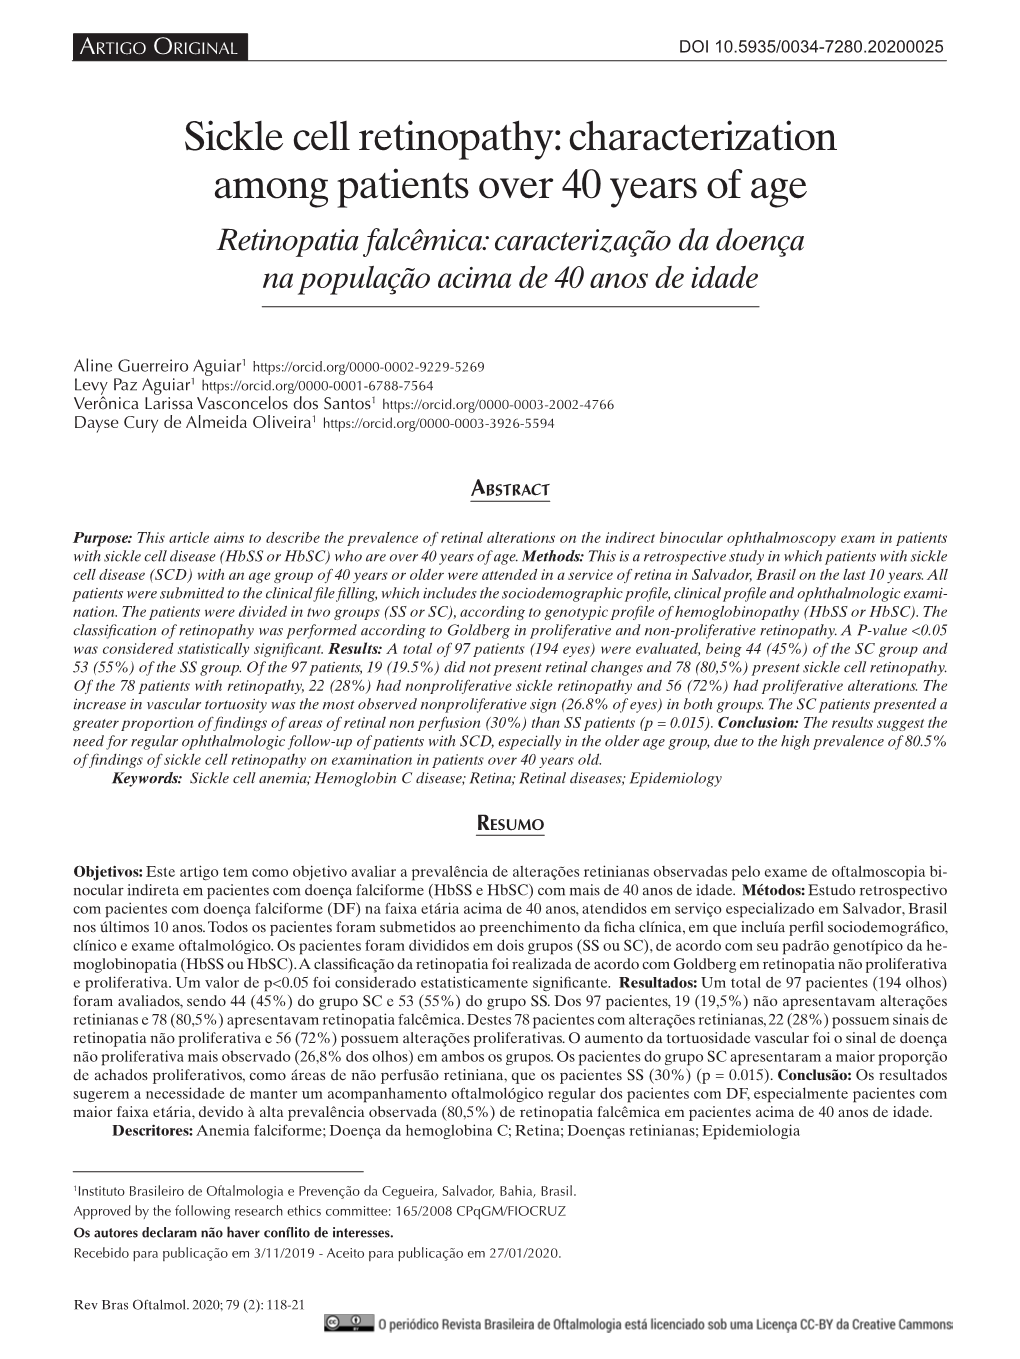 Sickle Cell Retinopathy: Characterization Among Patients Over 40 Years of Age Retinopatia Falcêmica: Caracterização Da Doença Na População Acima De 40 Anos De Idade